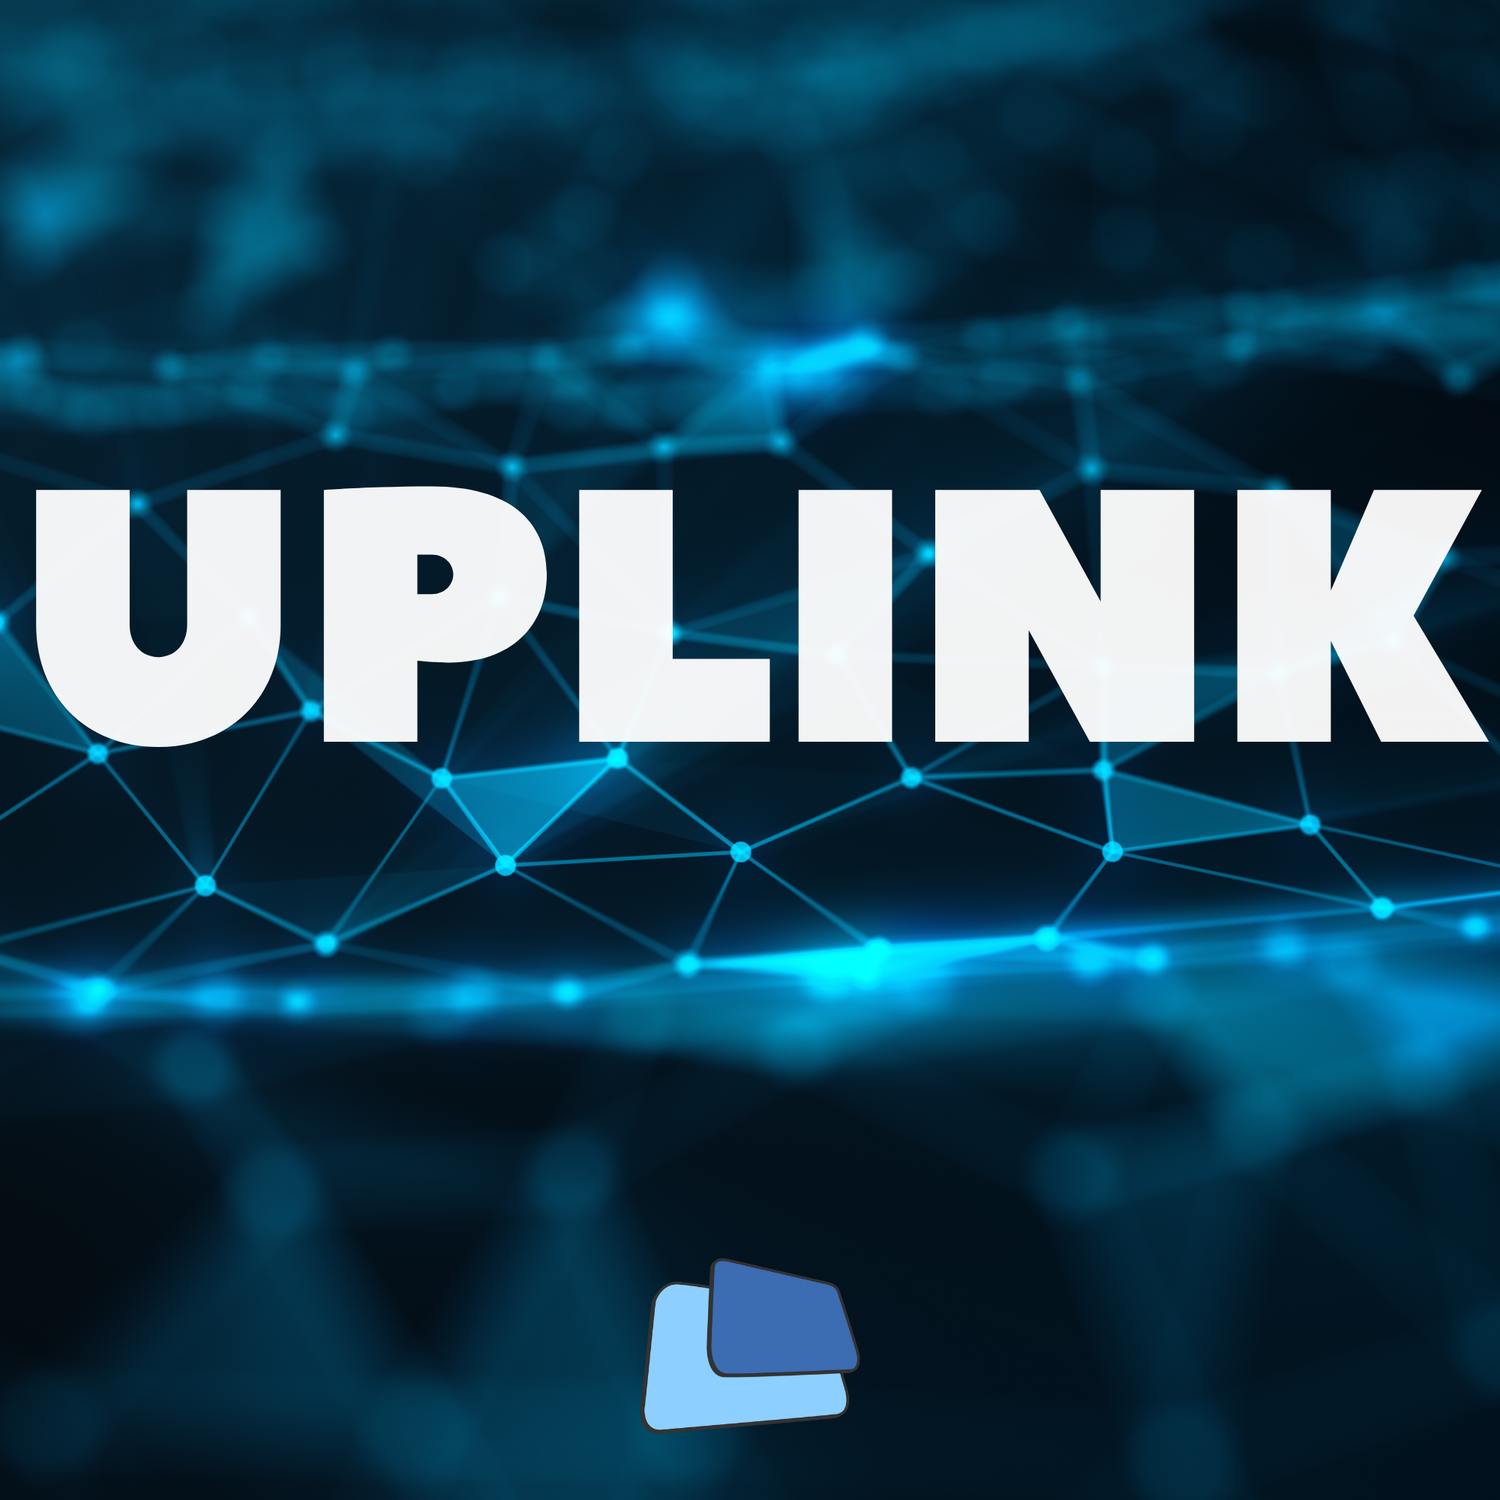 Uplink